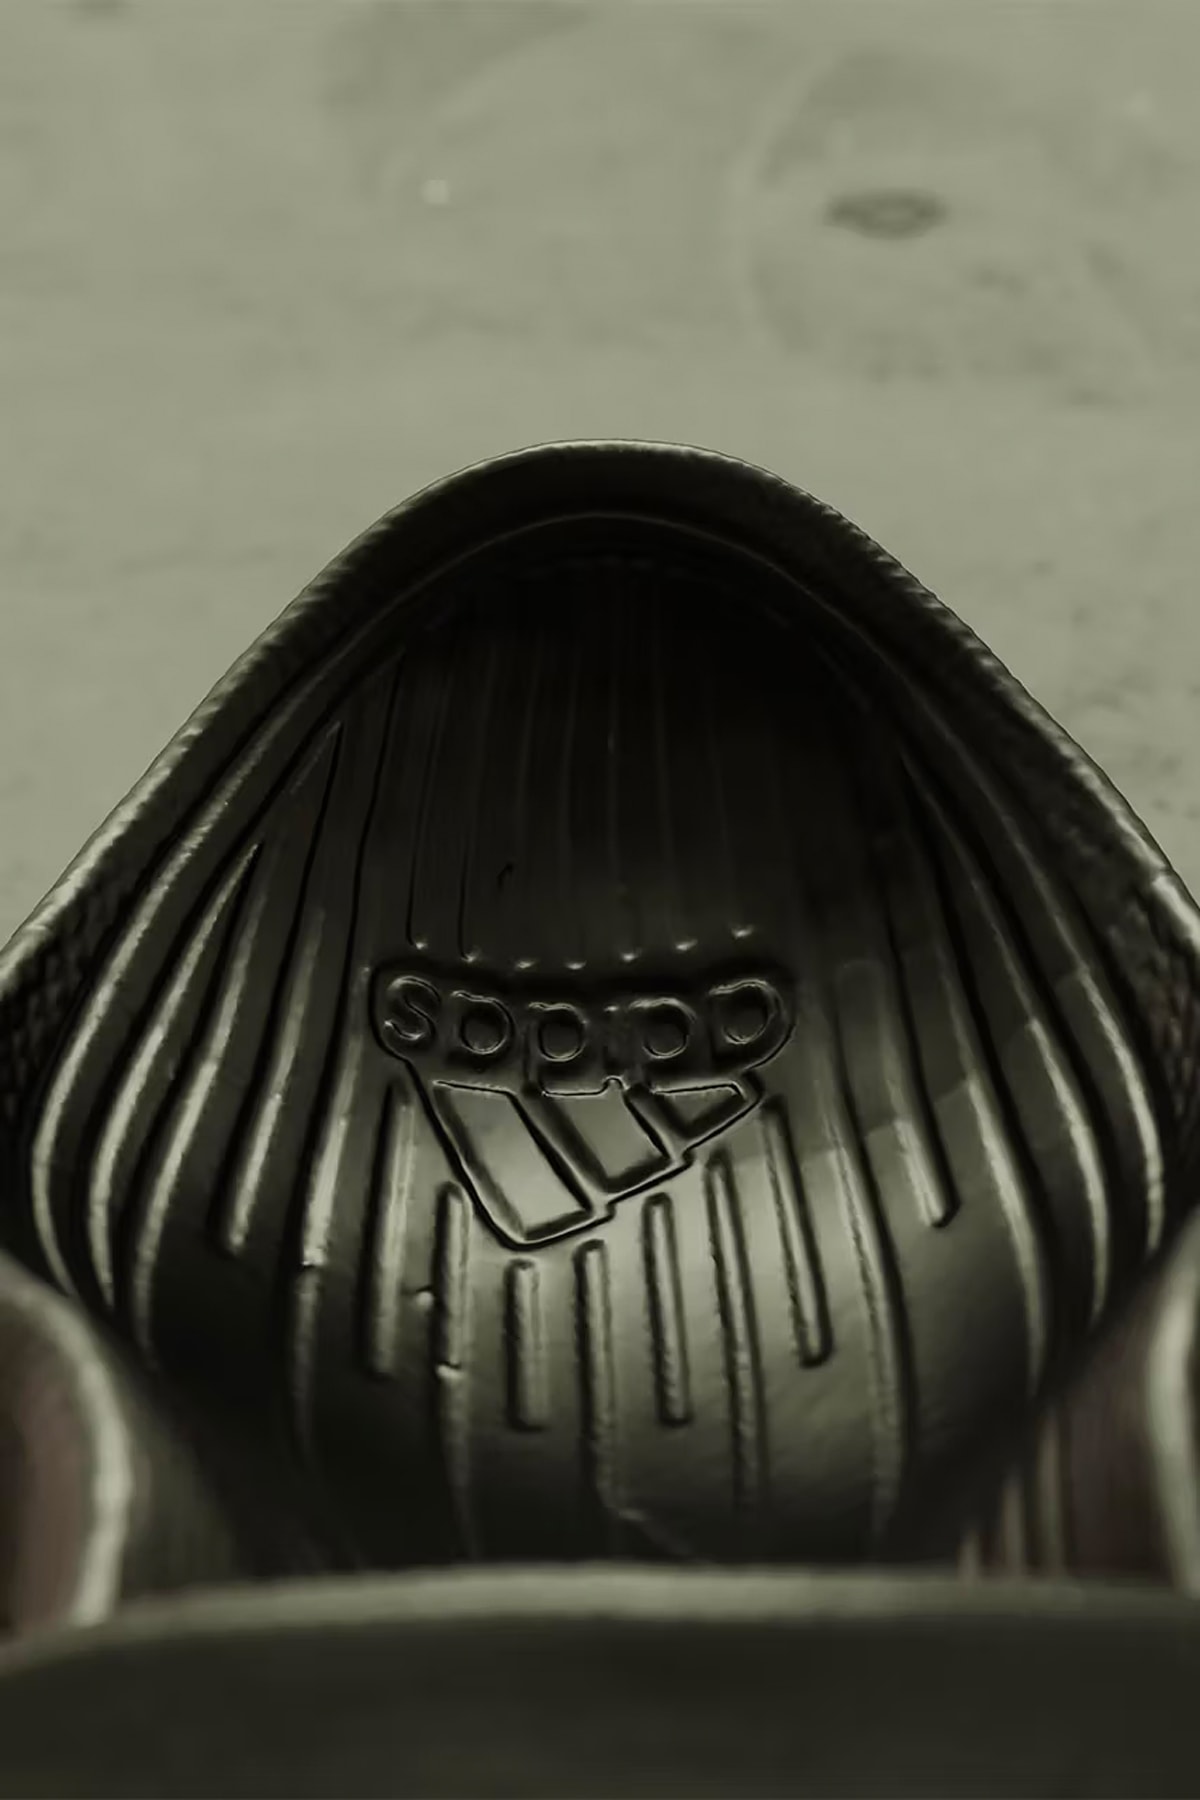 烏克蘭藝術家 Stanis Slav 打造全新 adidas 尖頭拖鞋